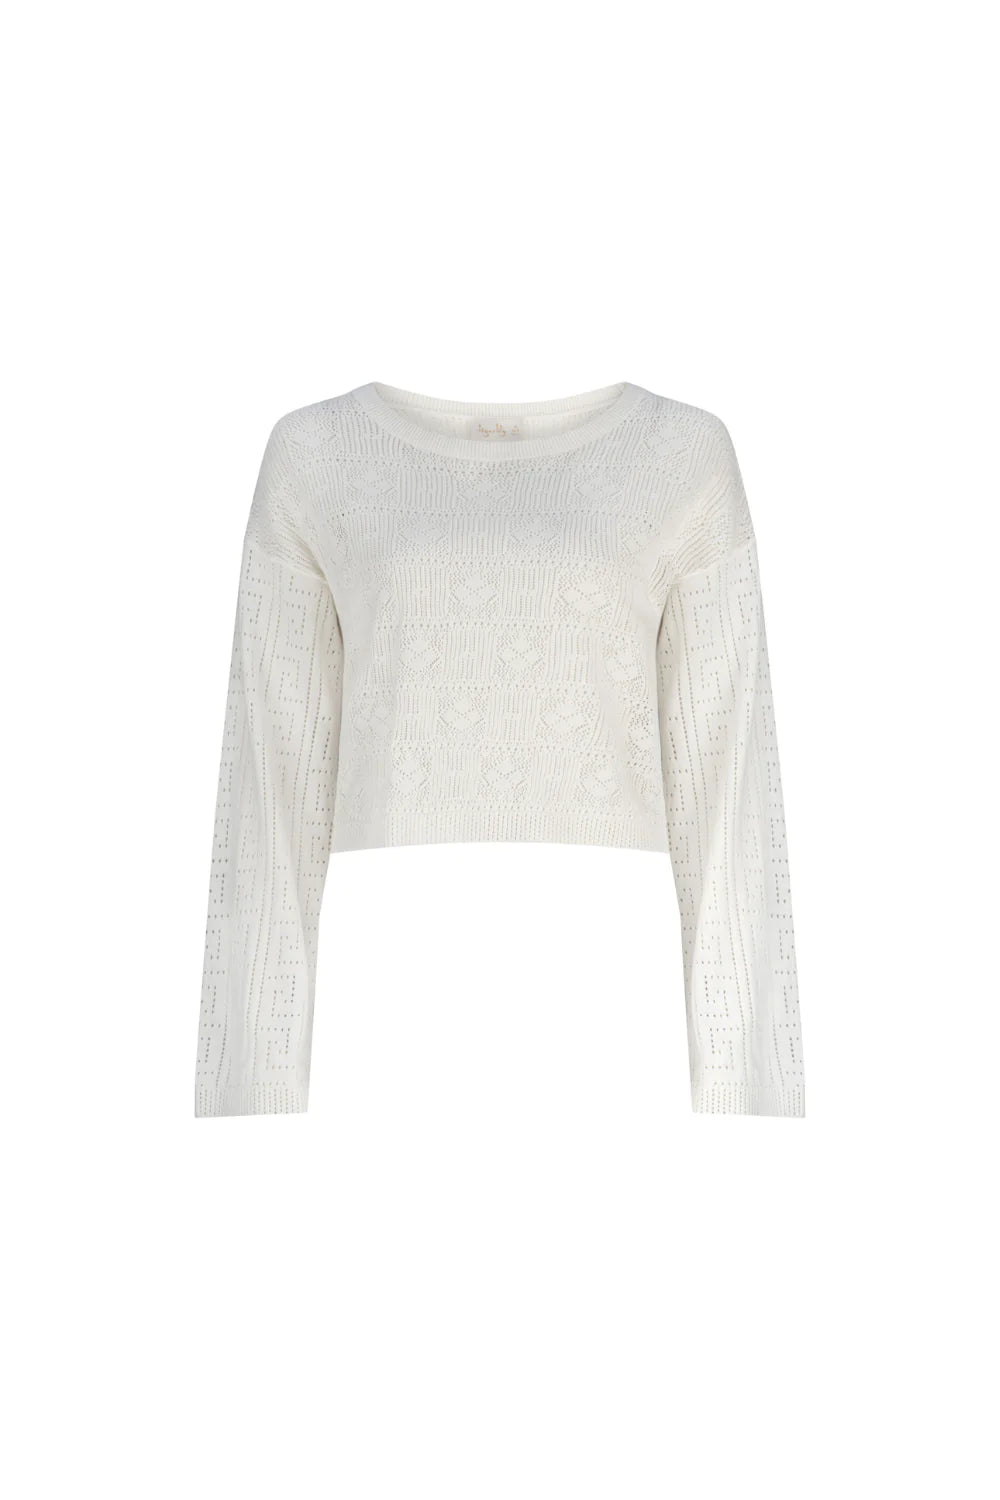 Apollo Eira Cropped Sweater - Off White - JL & CO. boutique 